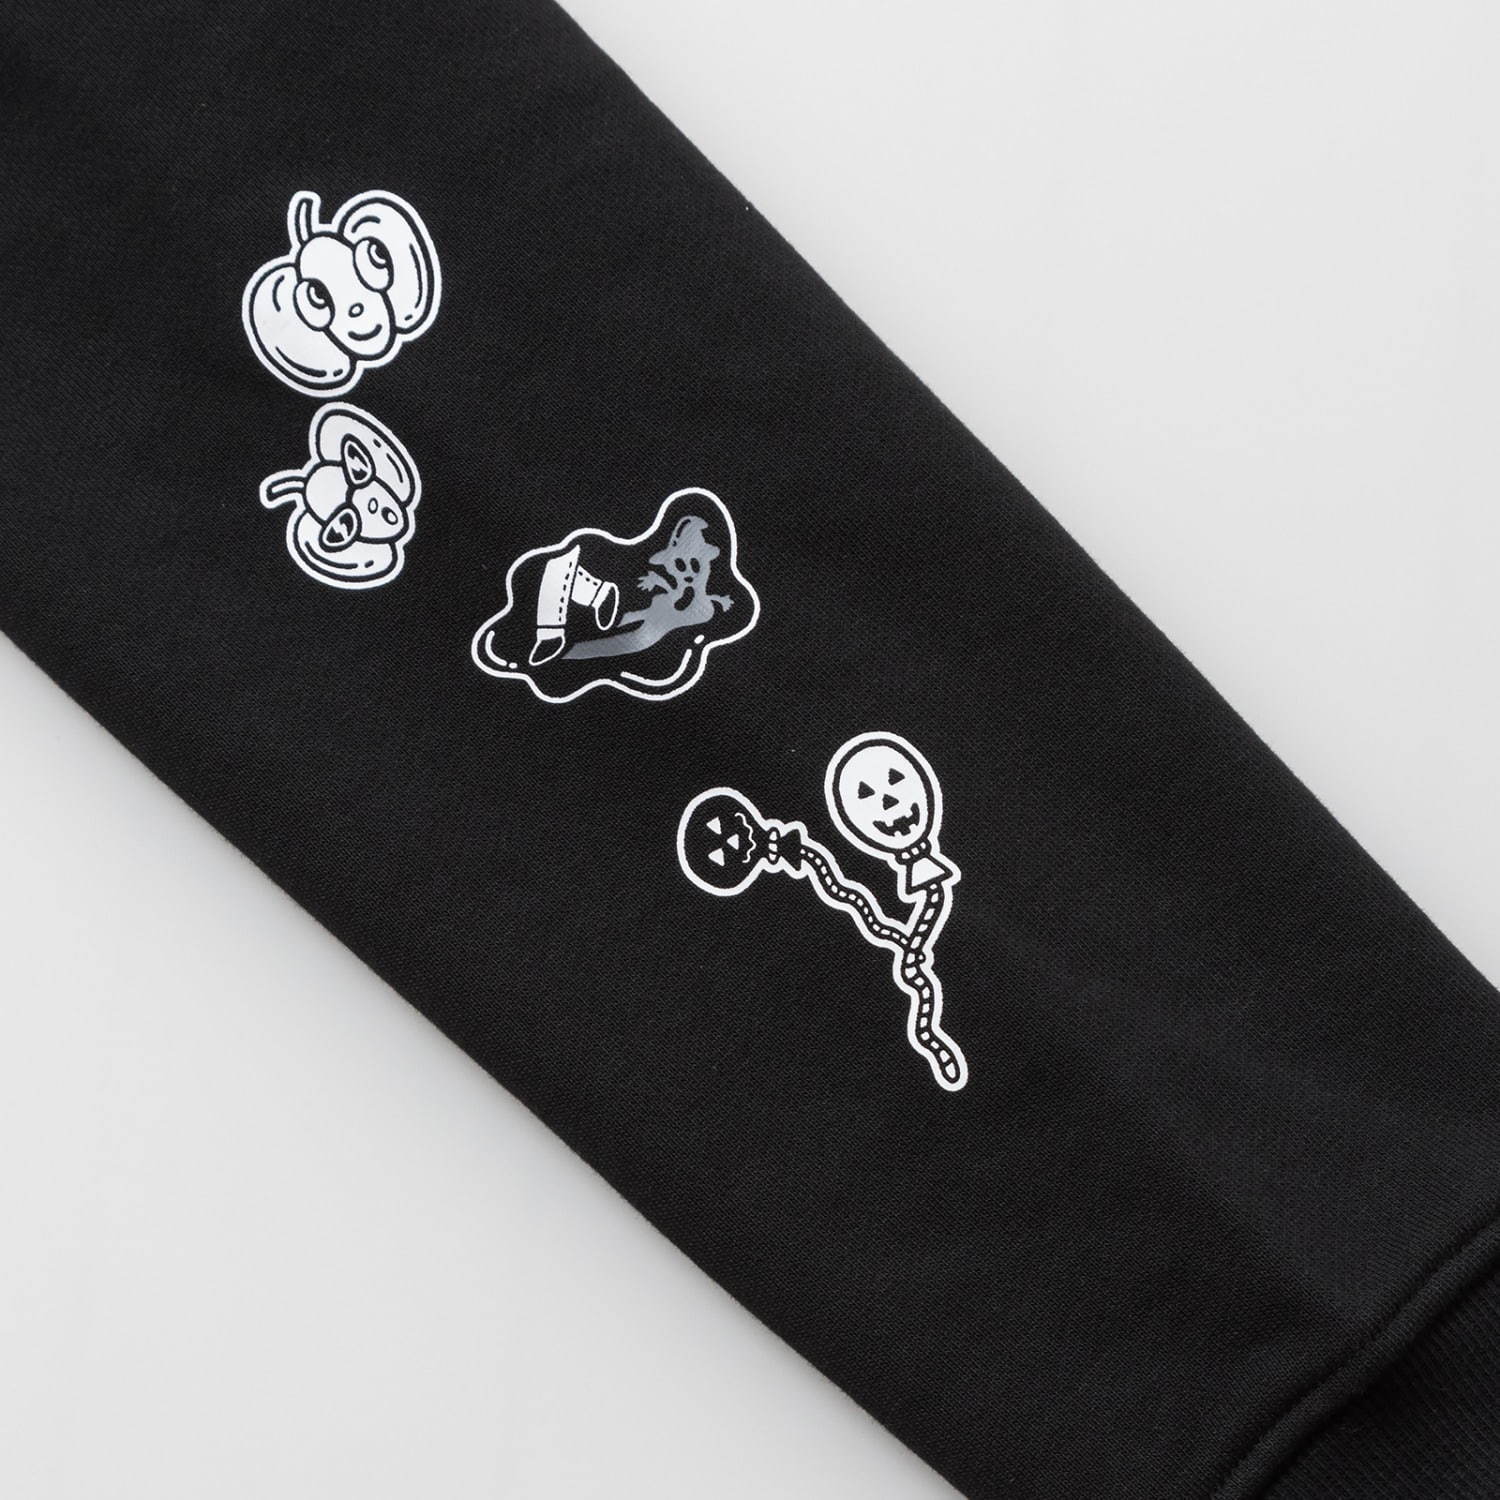 リーボック チョコムー ハロウィン がテーマのロンtやフーディ ポップなイラストを白黒で ファッションプレス